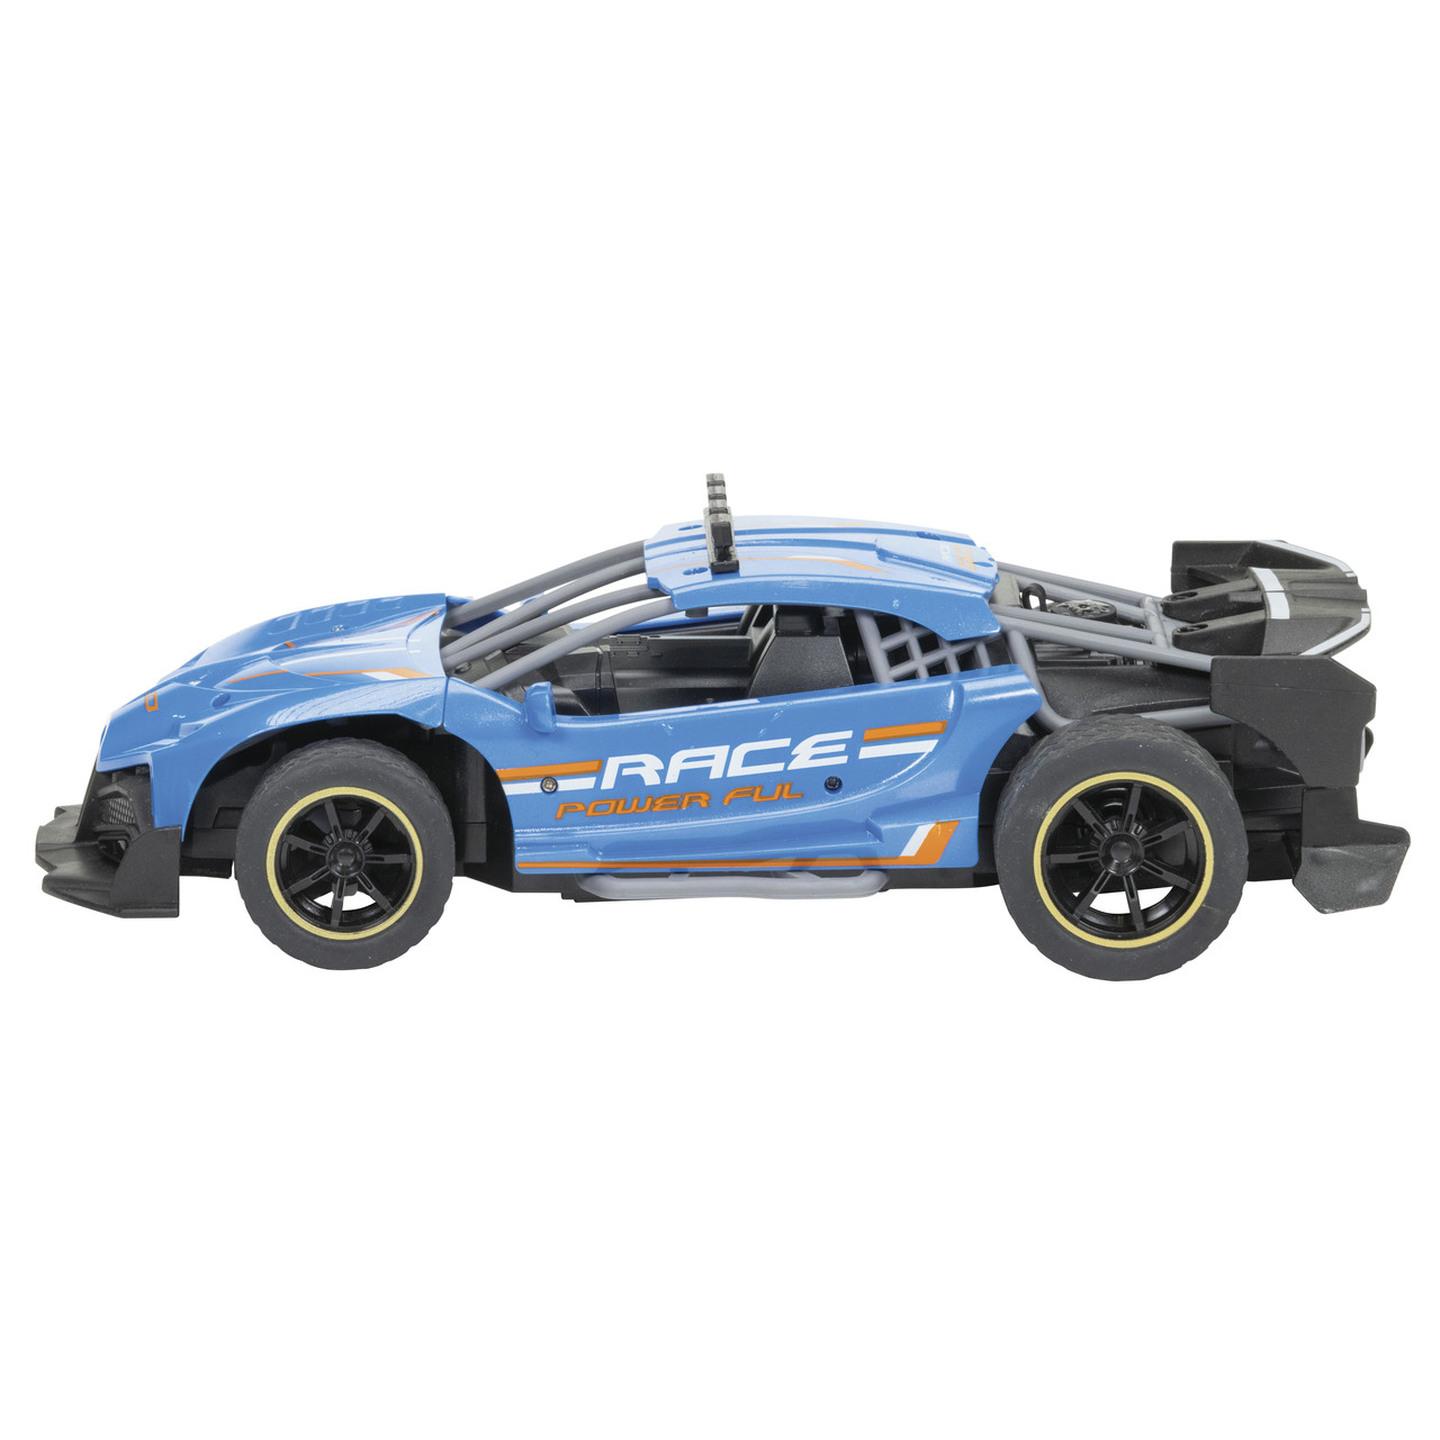 1:20 Scale R/C Race Car with Smoke Spray